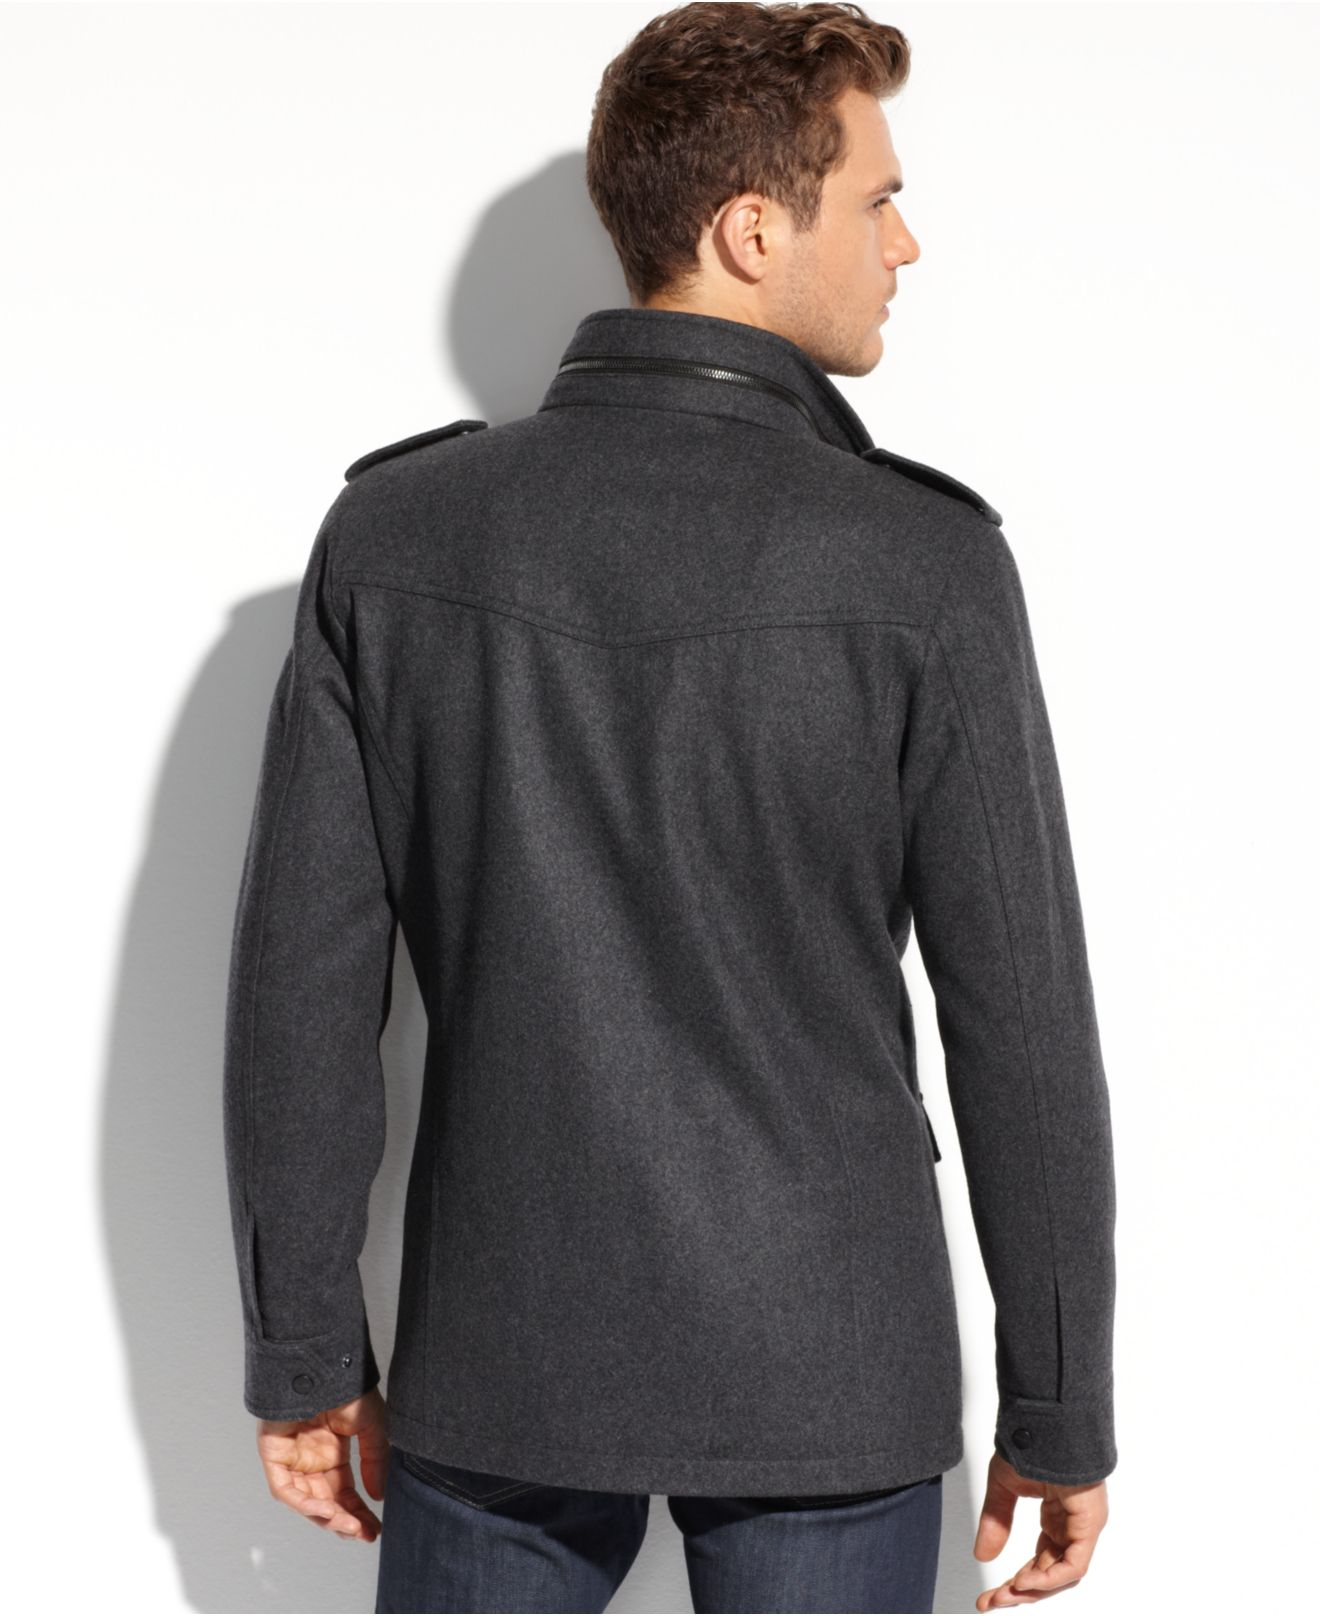 Ausable Jackets & Coats for Men - Poshmark